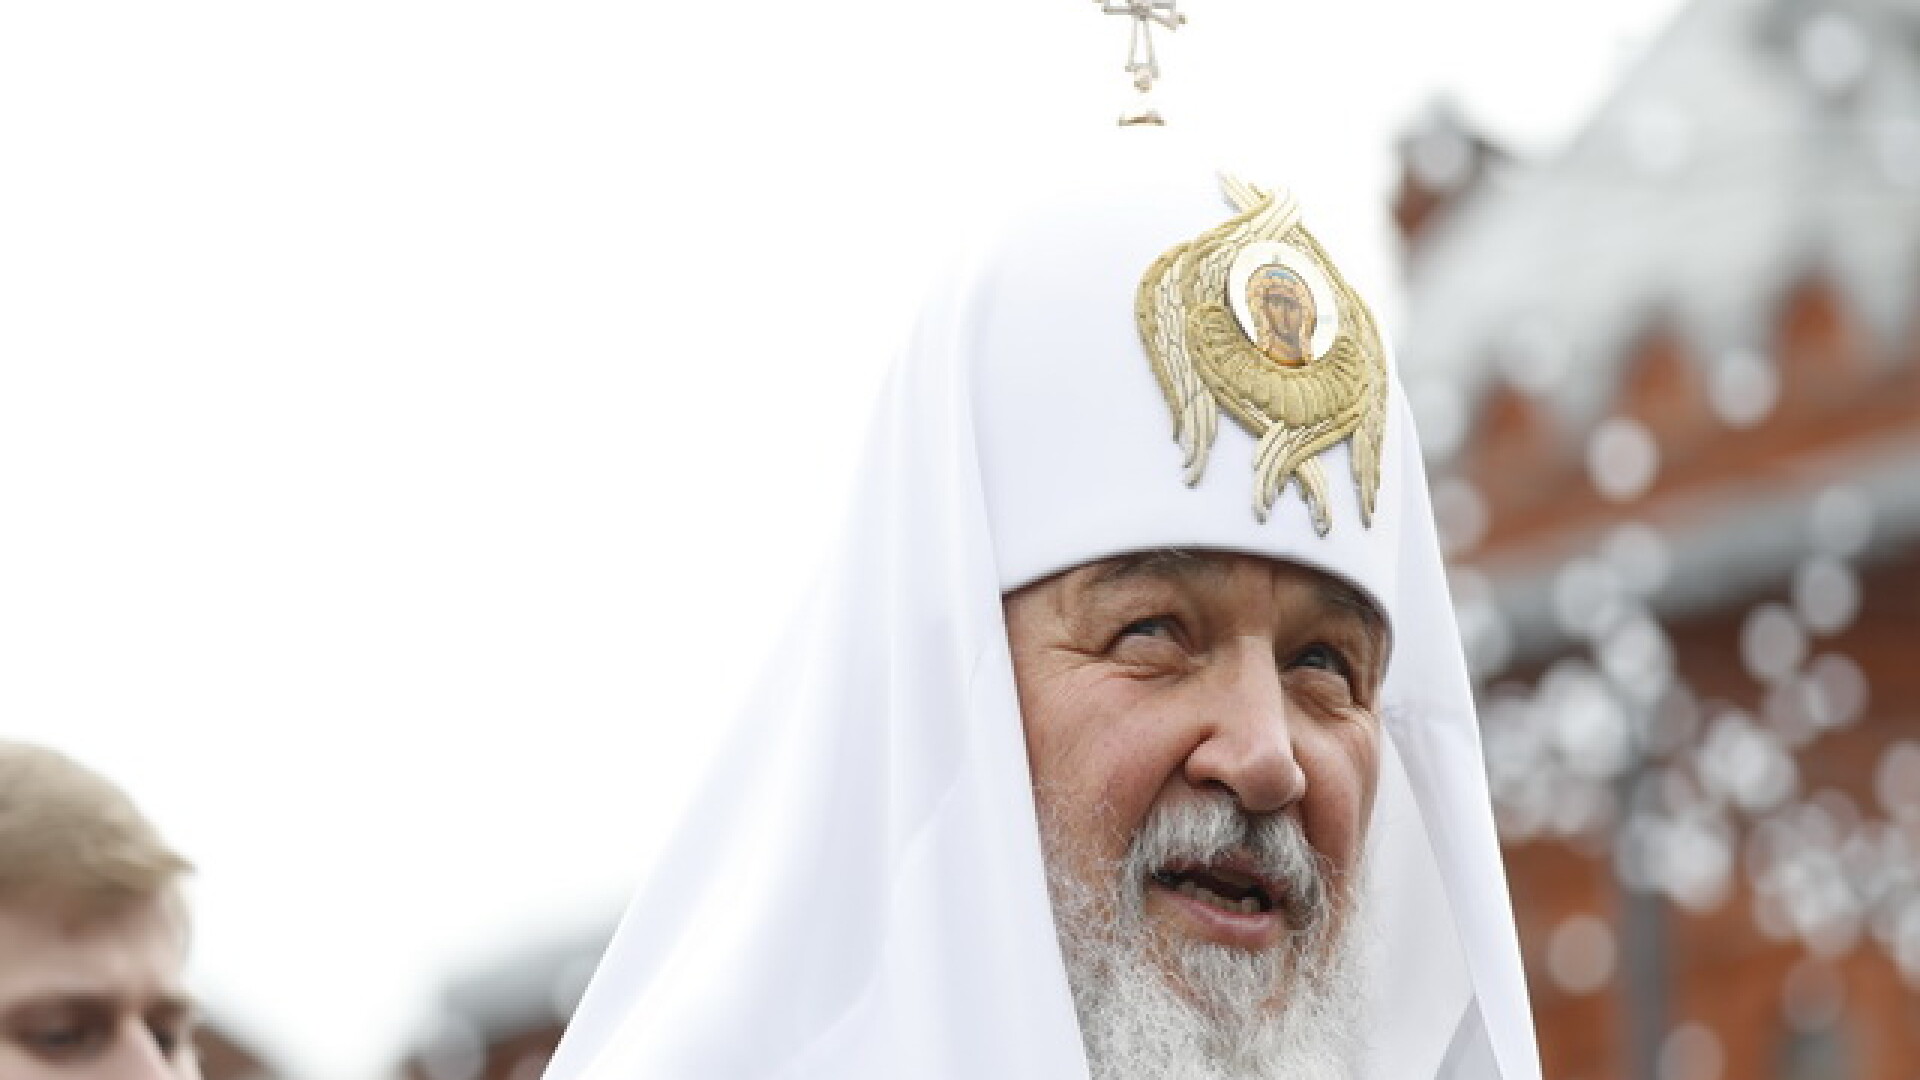 Banca falimentara a Bisericii Ortodoxe Ruse a dat sume importante de bani